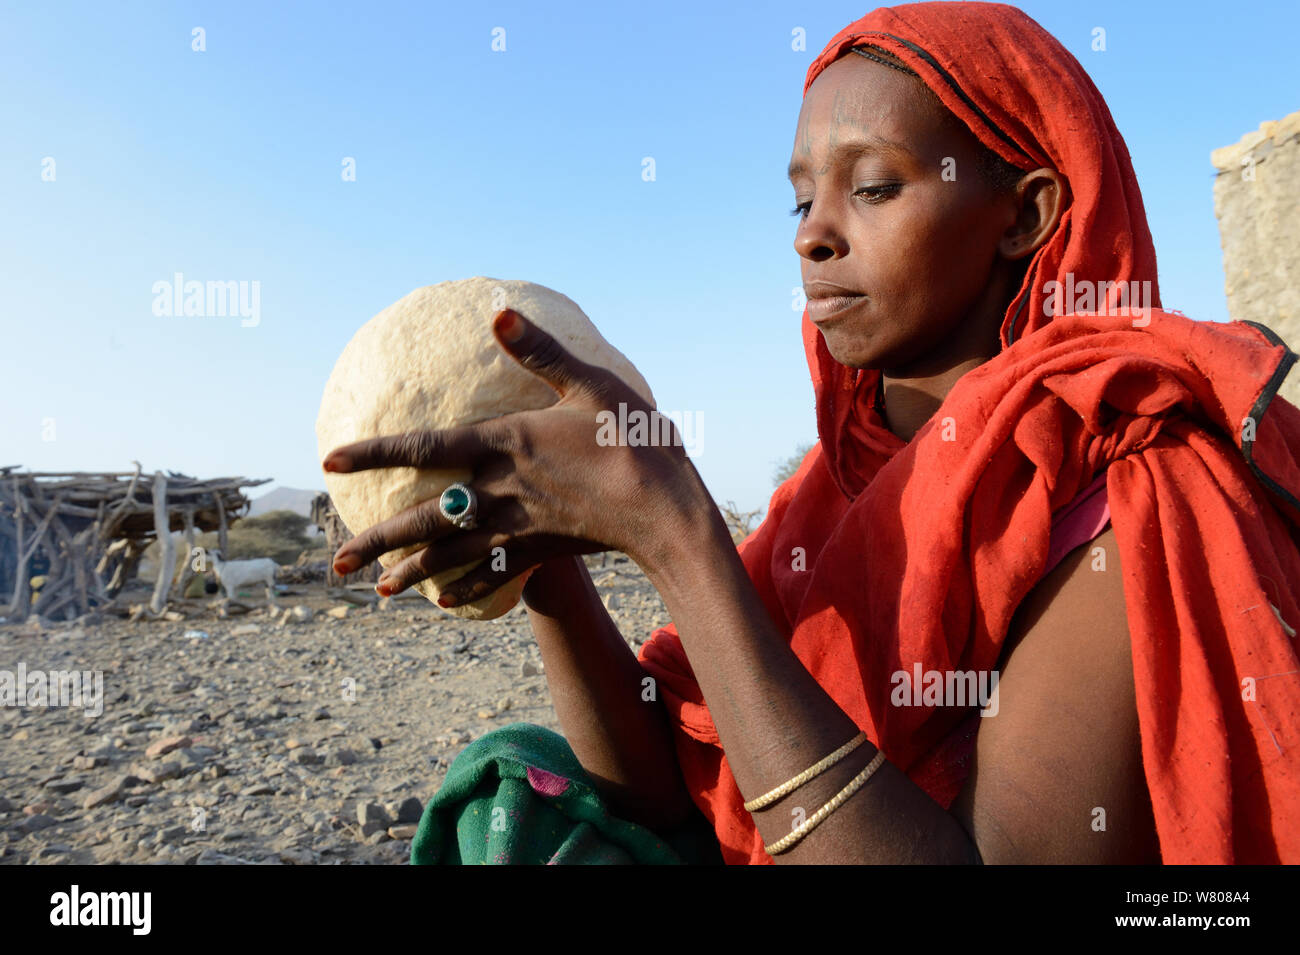 Afar tribe woman kneading a bread loaf before baking it, Malab-Dei village, Danakil depression, Afar region, Ethiopia, March 2015. Stock Photo